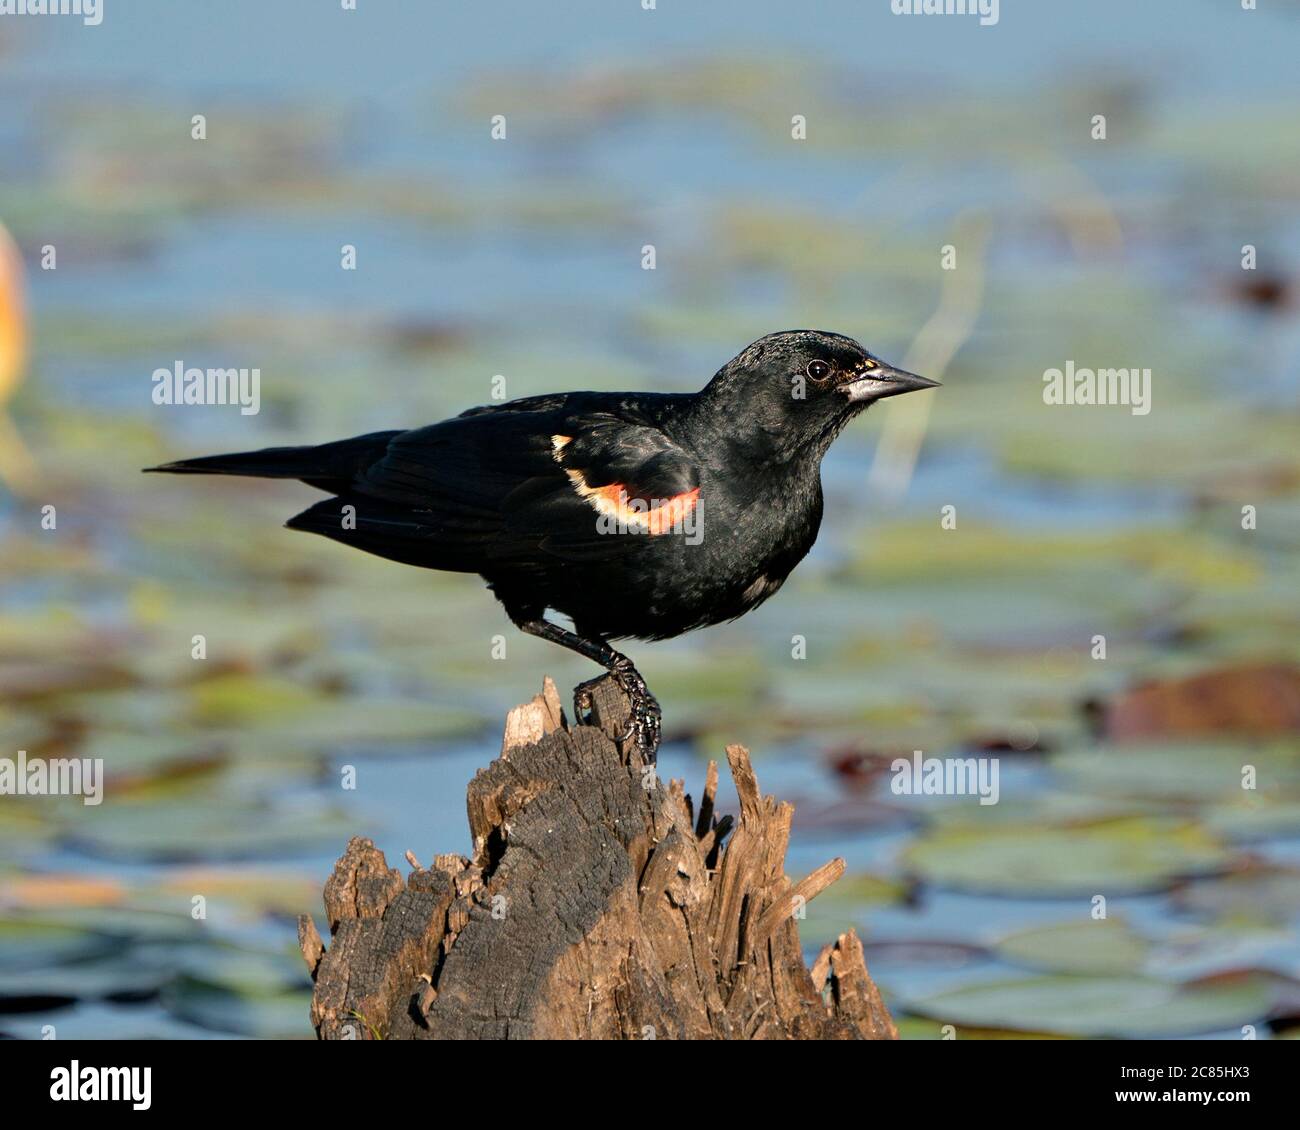 Red Winged Black Bird auf einem Stumpf mit Weichwasser Hintergrund zeigt schwarze Feder Gefieder in seinem Lebensraum und Umgebung thront. Stockfoto